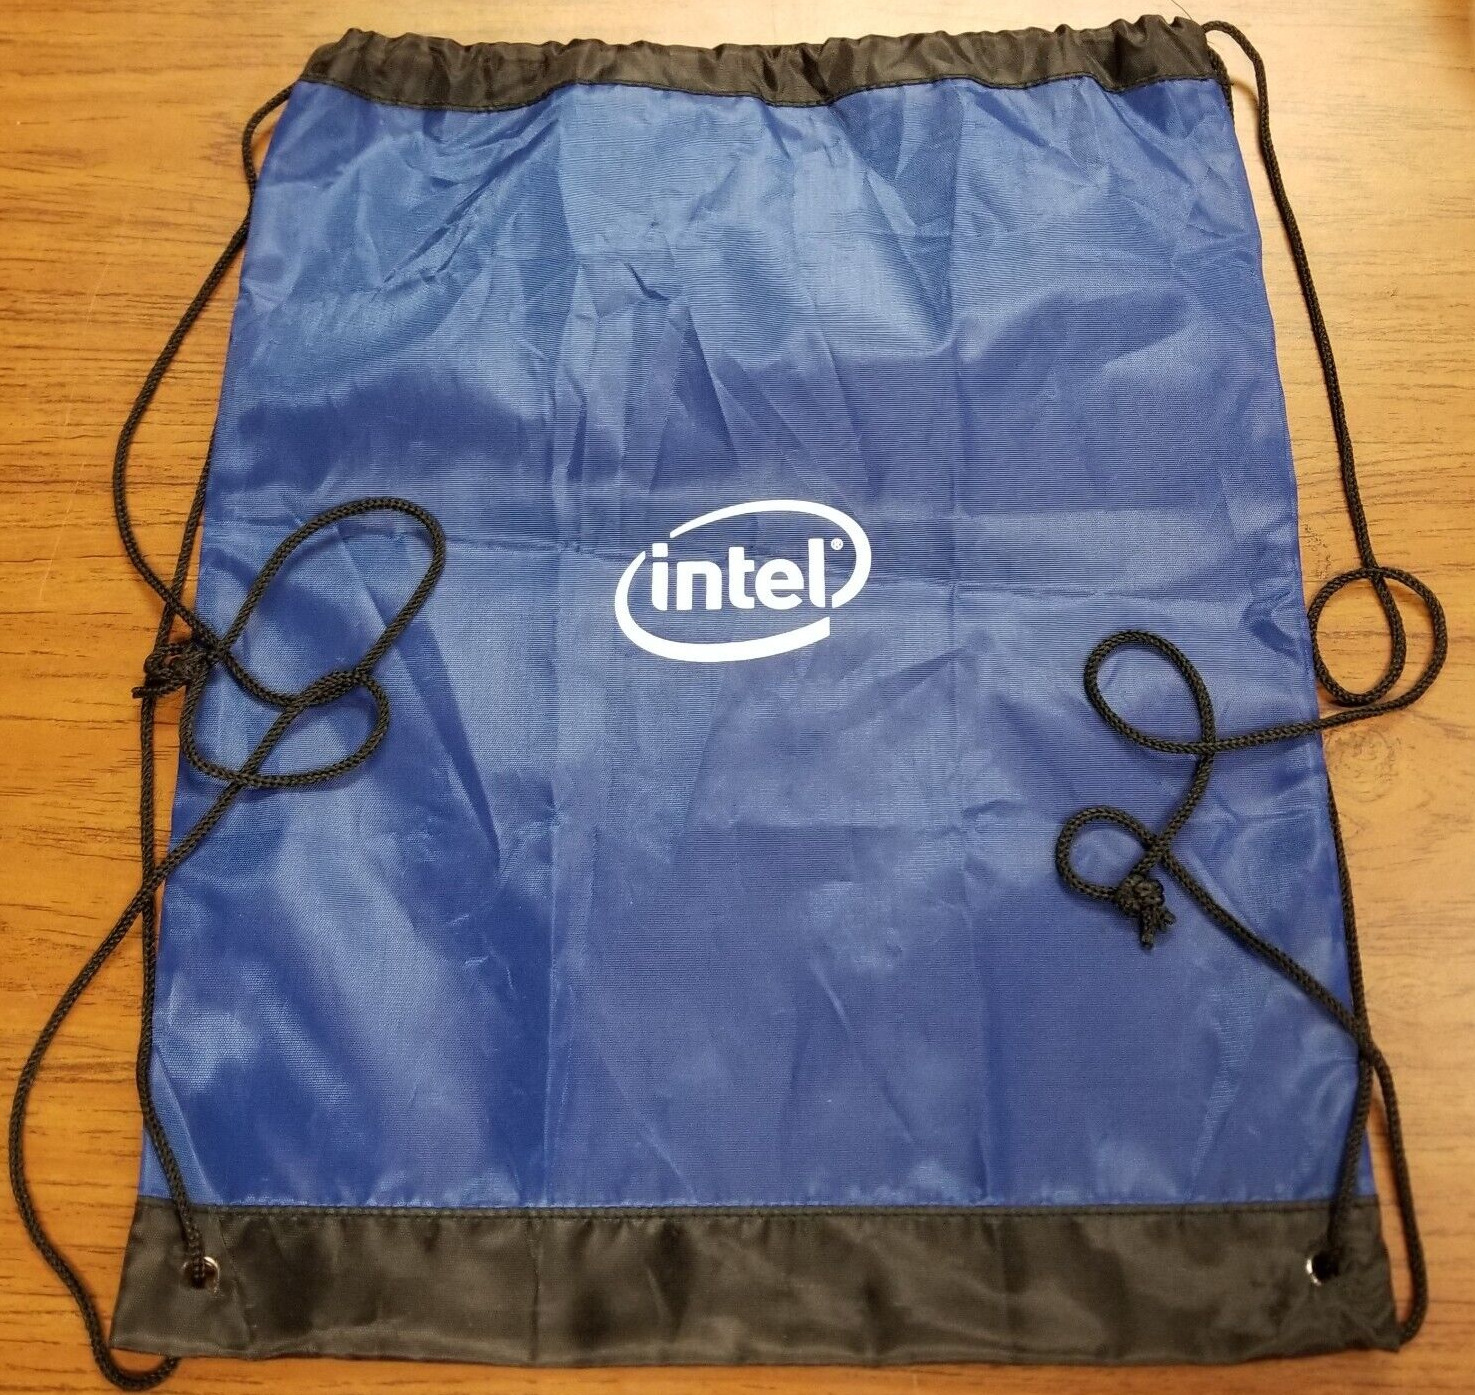 Intel Backpack Bag Convention Swag Blue One Pocket Foldable Large Vintage